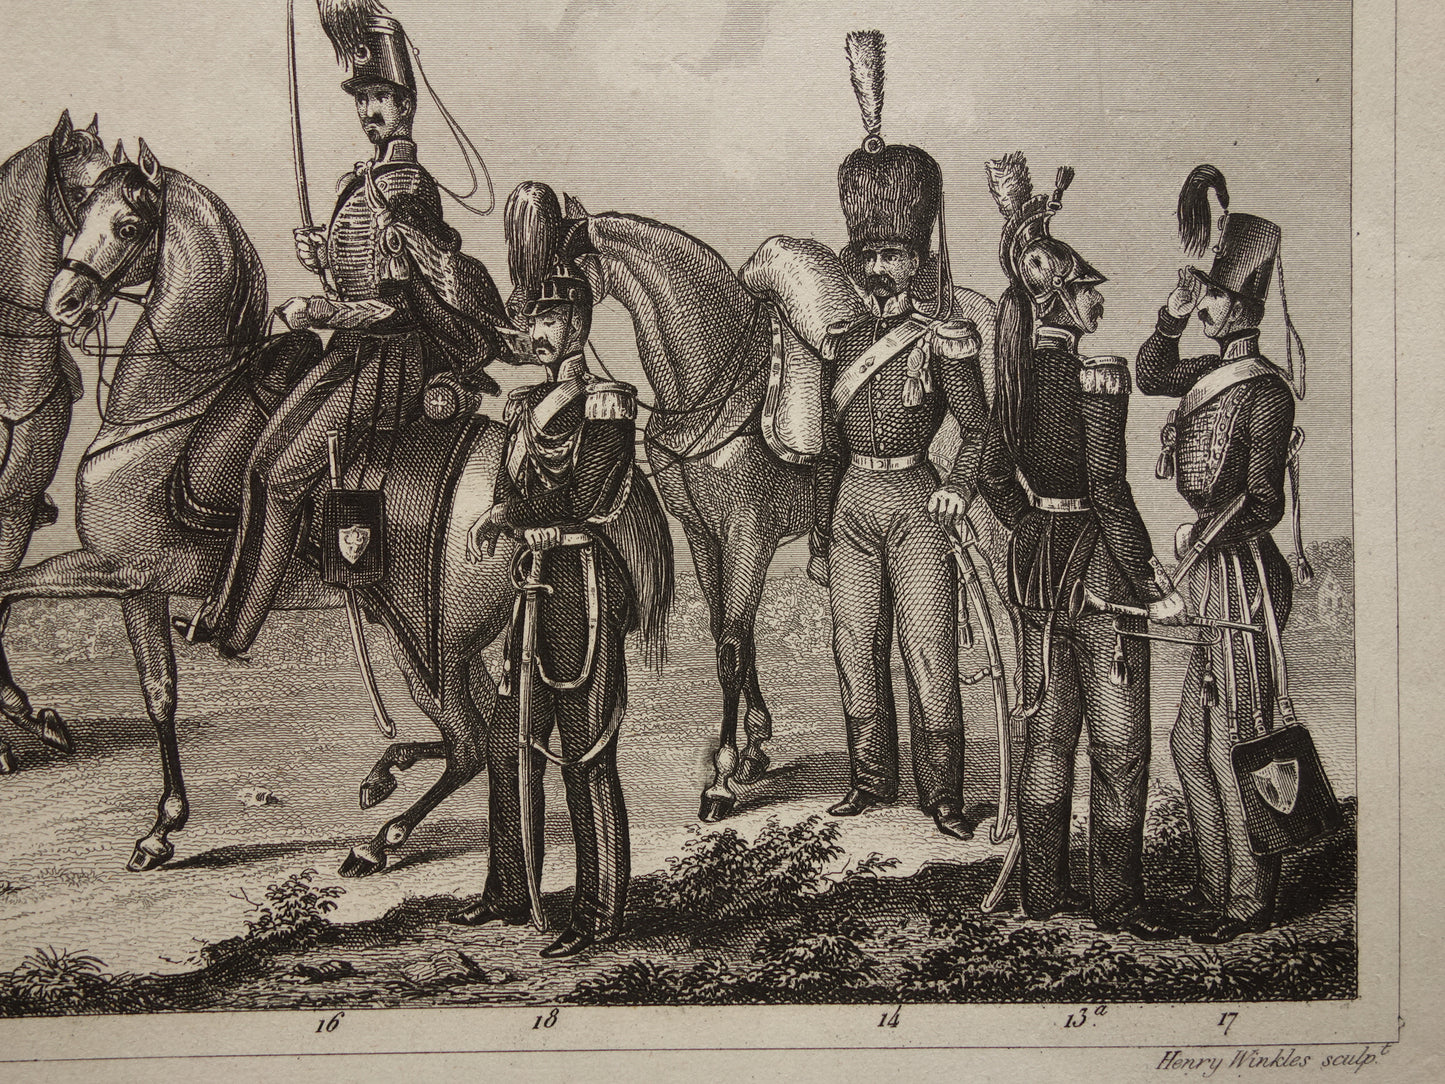 1849 oude  prent van Duitse en Franse soldaten - originele antieke militaire illustratie - uniformen leger Frankrijk Duitsland print